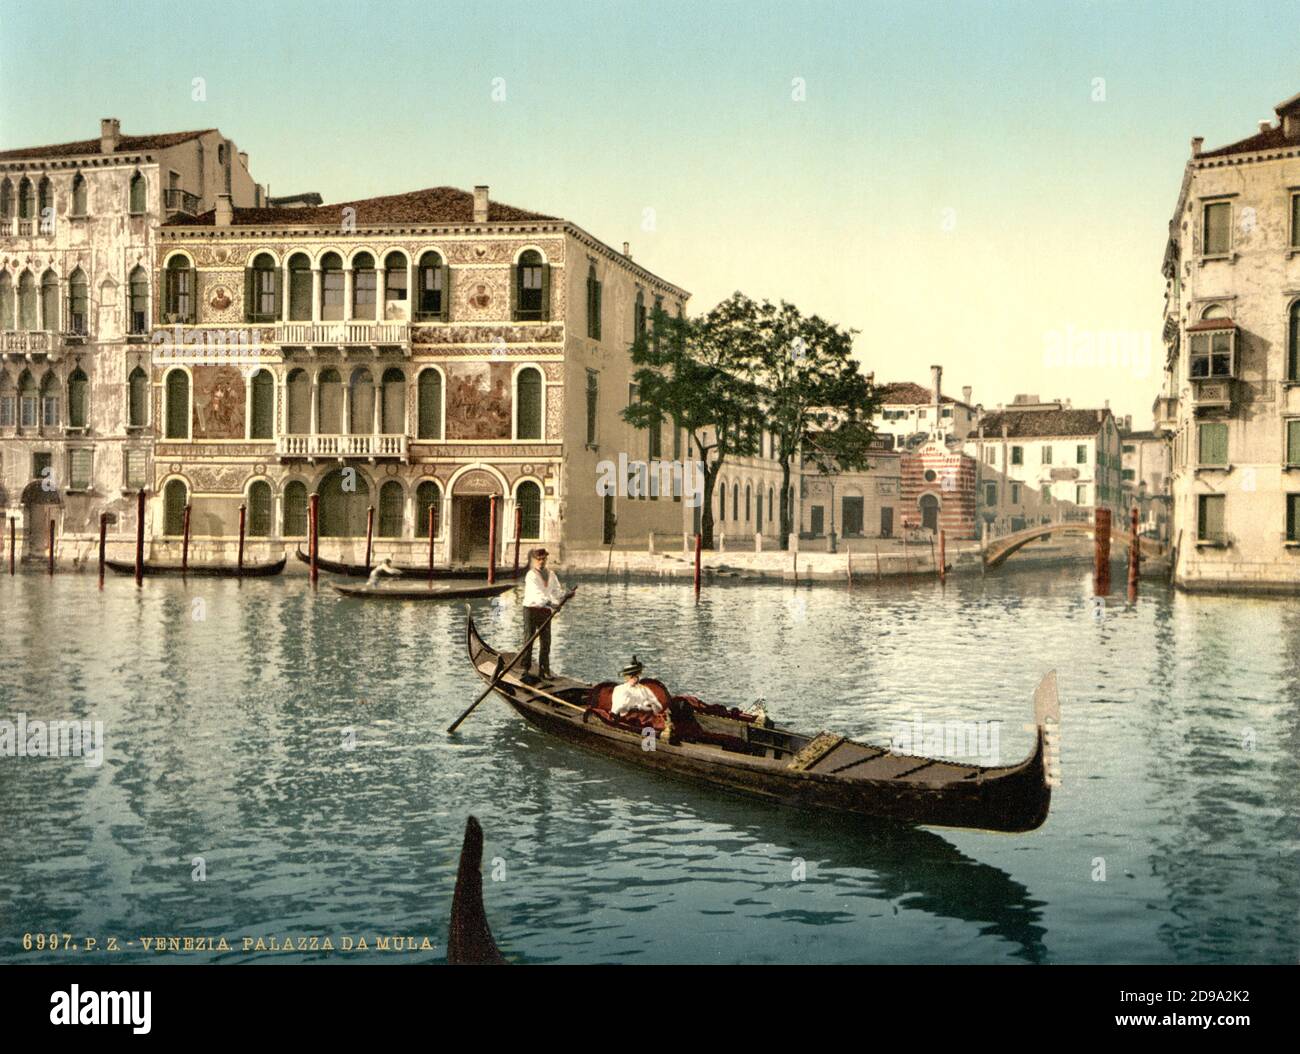 1895 ca. , ISOLA DI MURANO , VENEZIA ,  ITALY : The  Da Mula Palace . PALAZZO DA MULA . Photocrom print colors edited by Detroit Publishing Co.  -  VENICE - VENETO -  ITALIA - FOTO STORICHE - HISTORY - GEOGRAFIA - GEOGRAPHY  - ARCHITETTURA - ARCHITECTURE  -     - ARTS - ARTE - gondola - canale - ISLE   ----  Archivio GBB Stock Photo